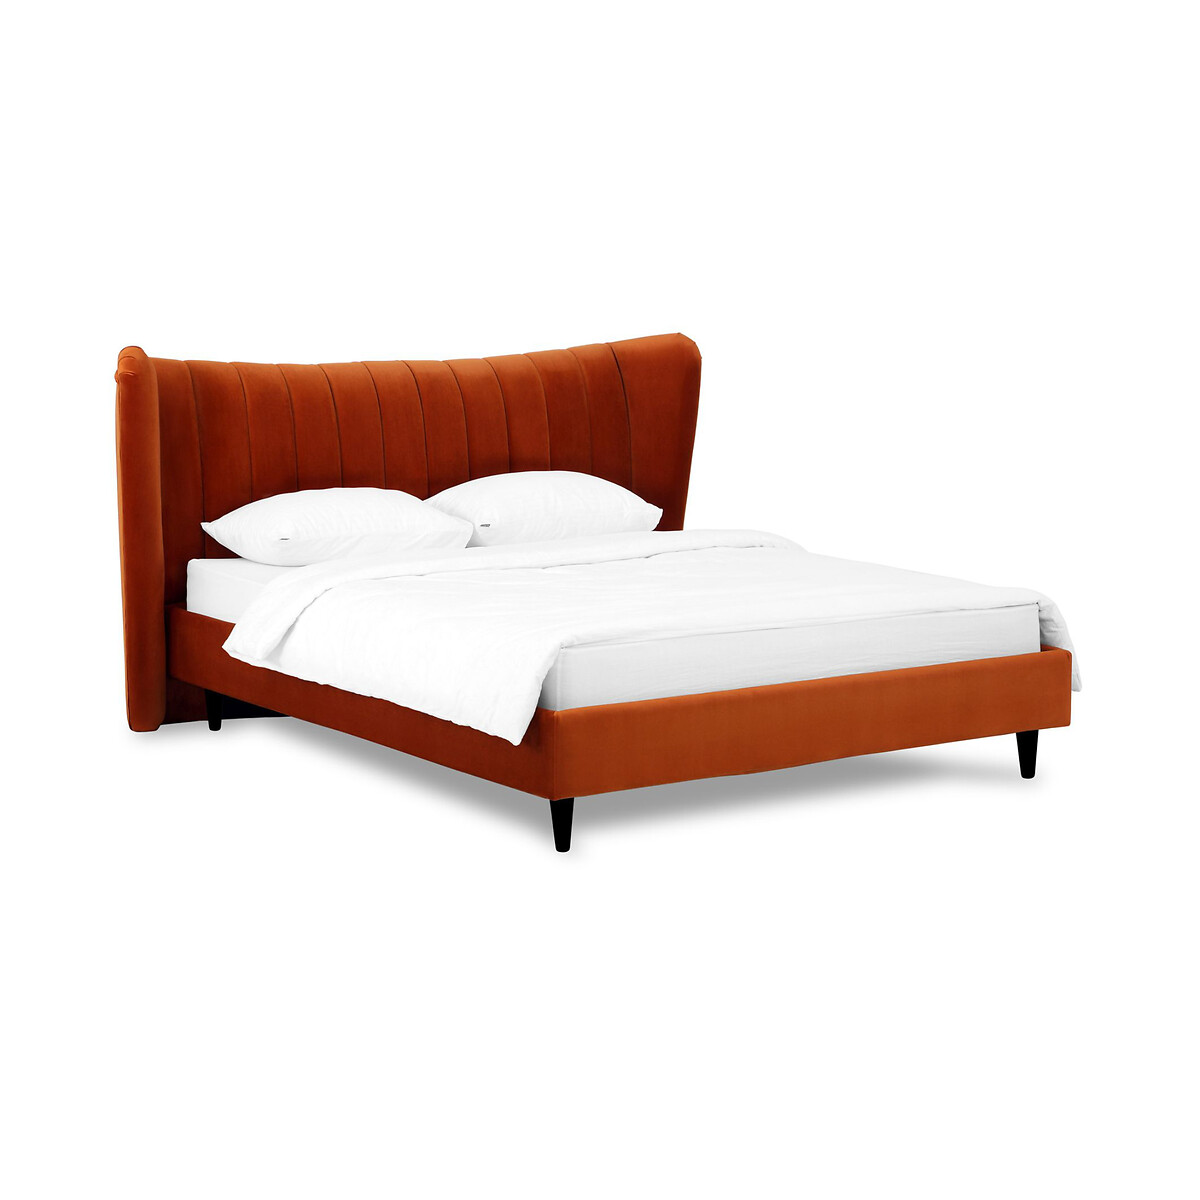 Кровать Queen II Agata L 160 x 200 см оранжевый LaRedoute, размер 160 x 200 см - фото 1